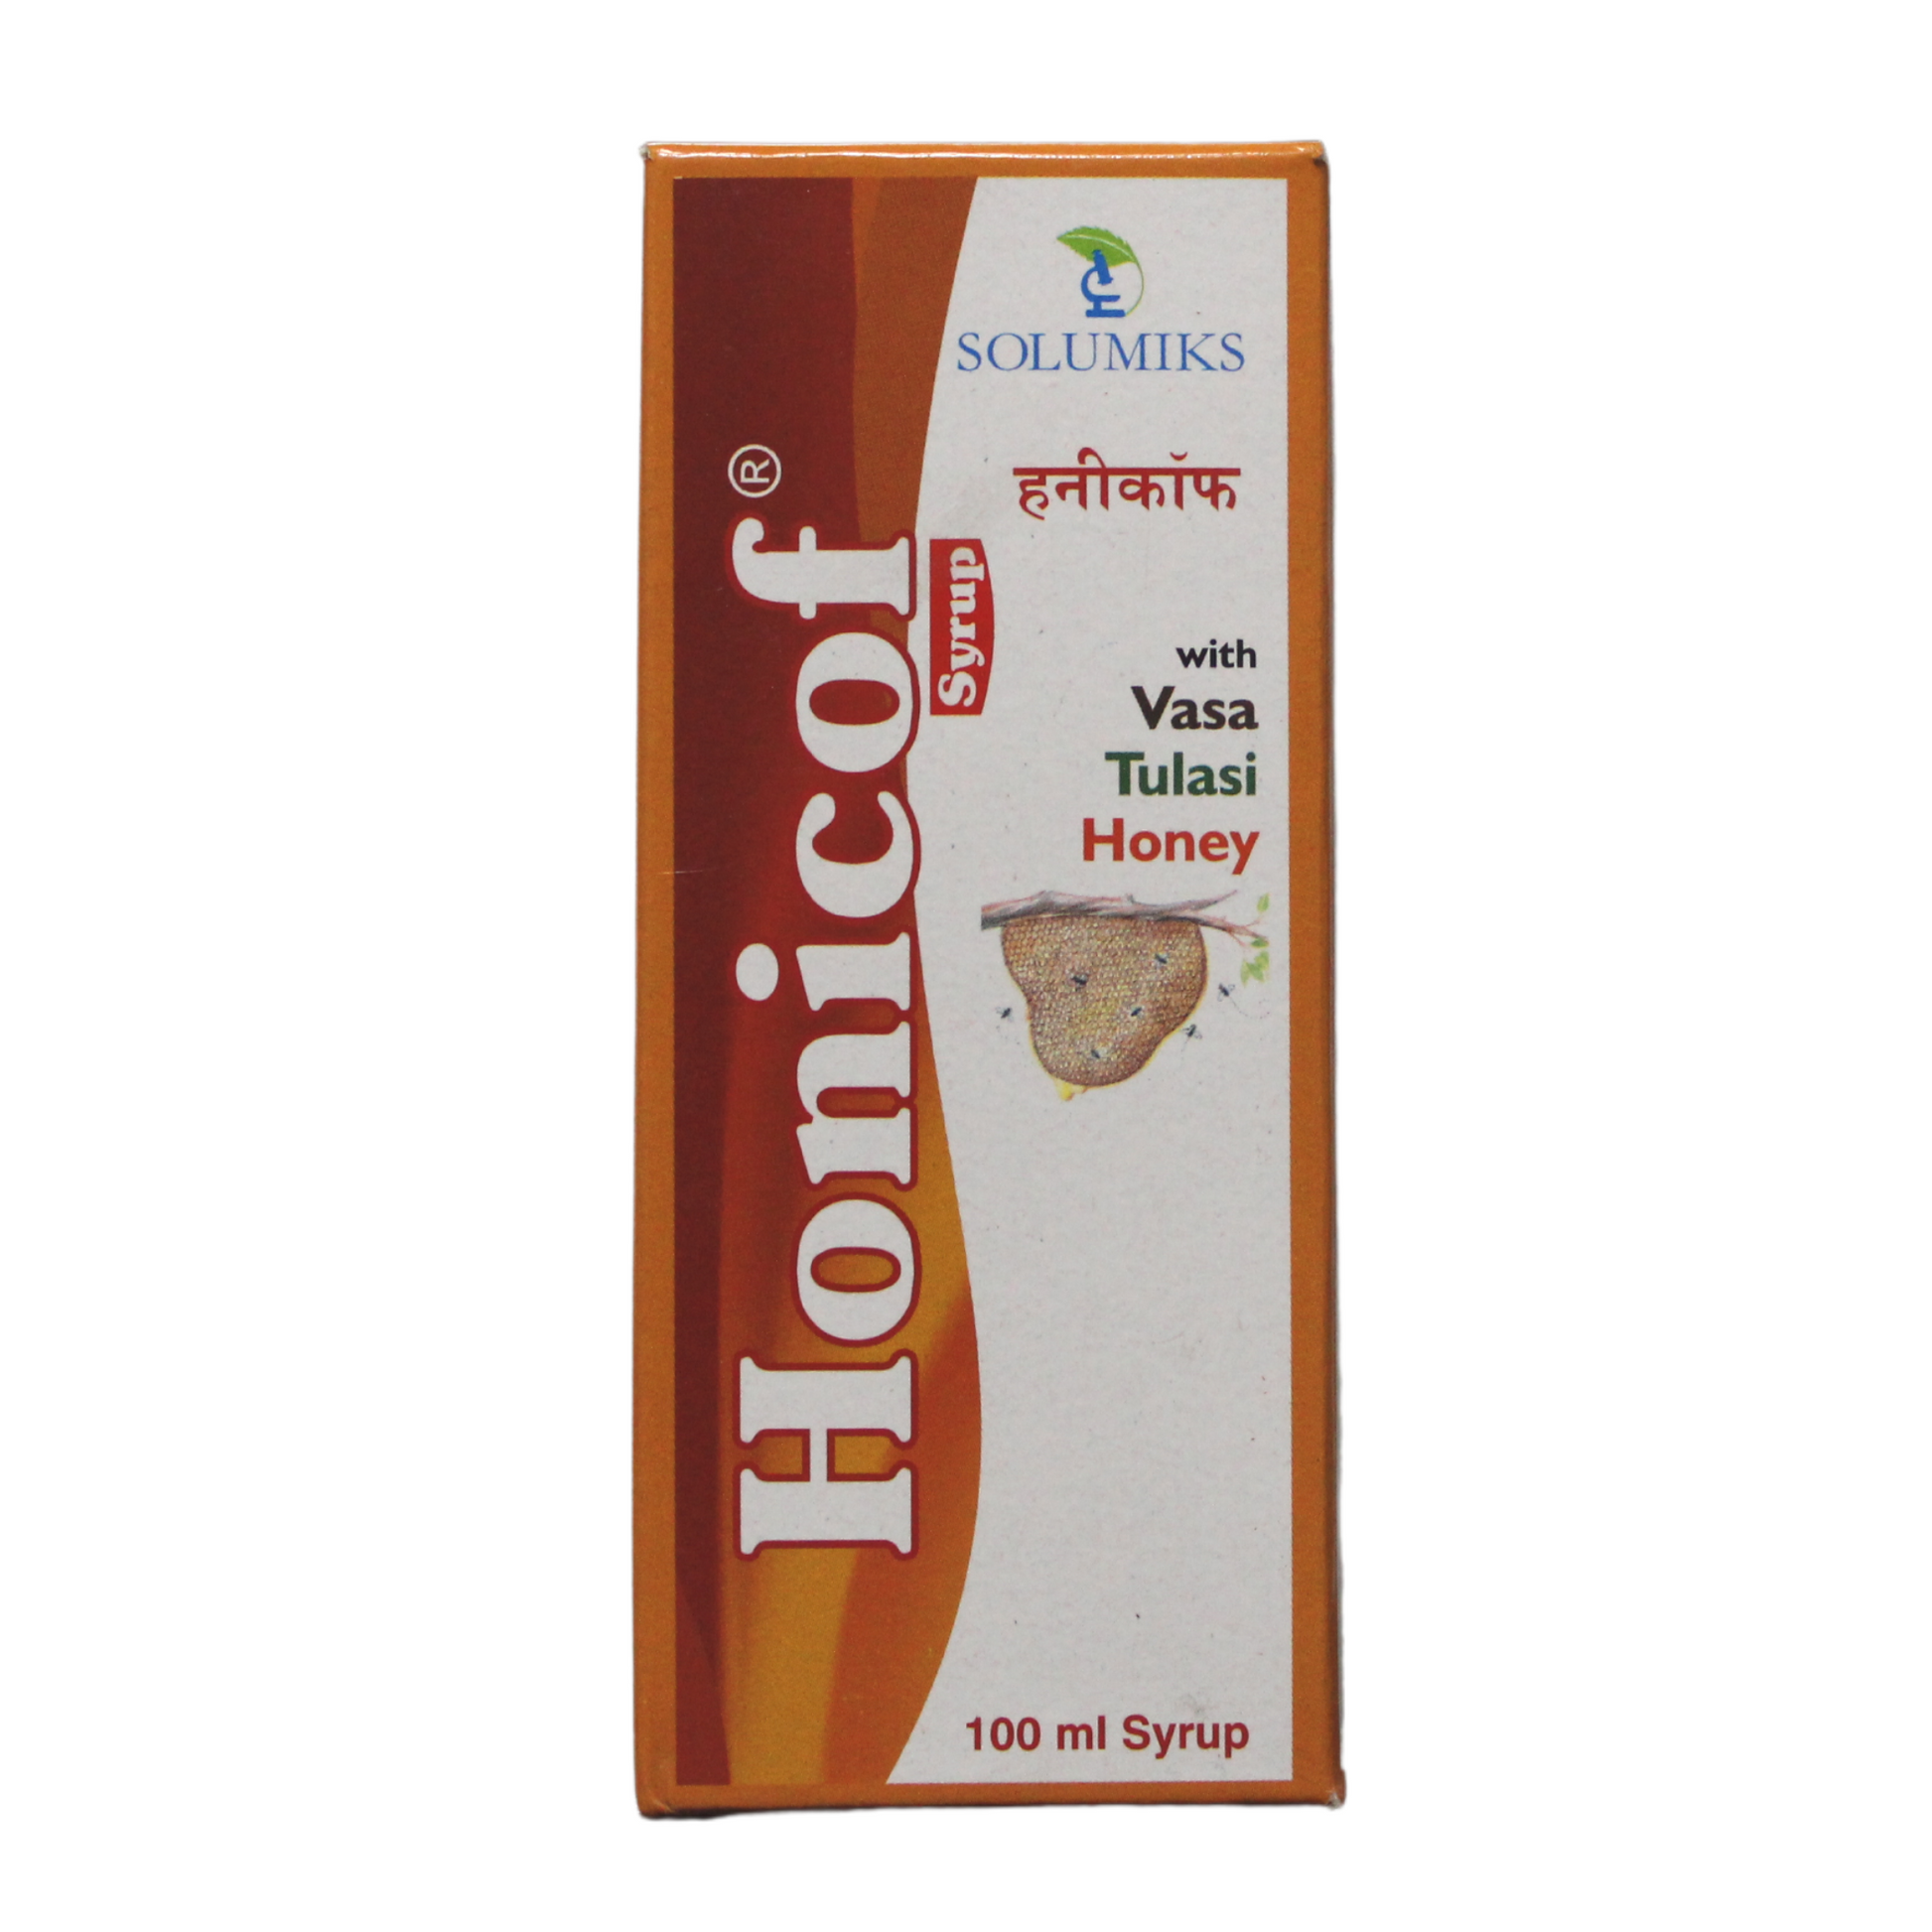 Honicof syrup 100ml -  Solumiks - Medizzo.com